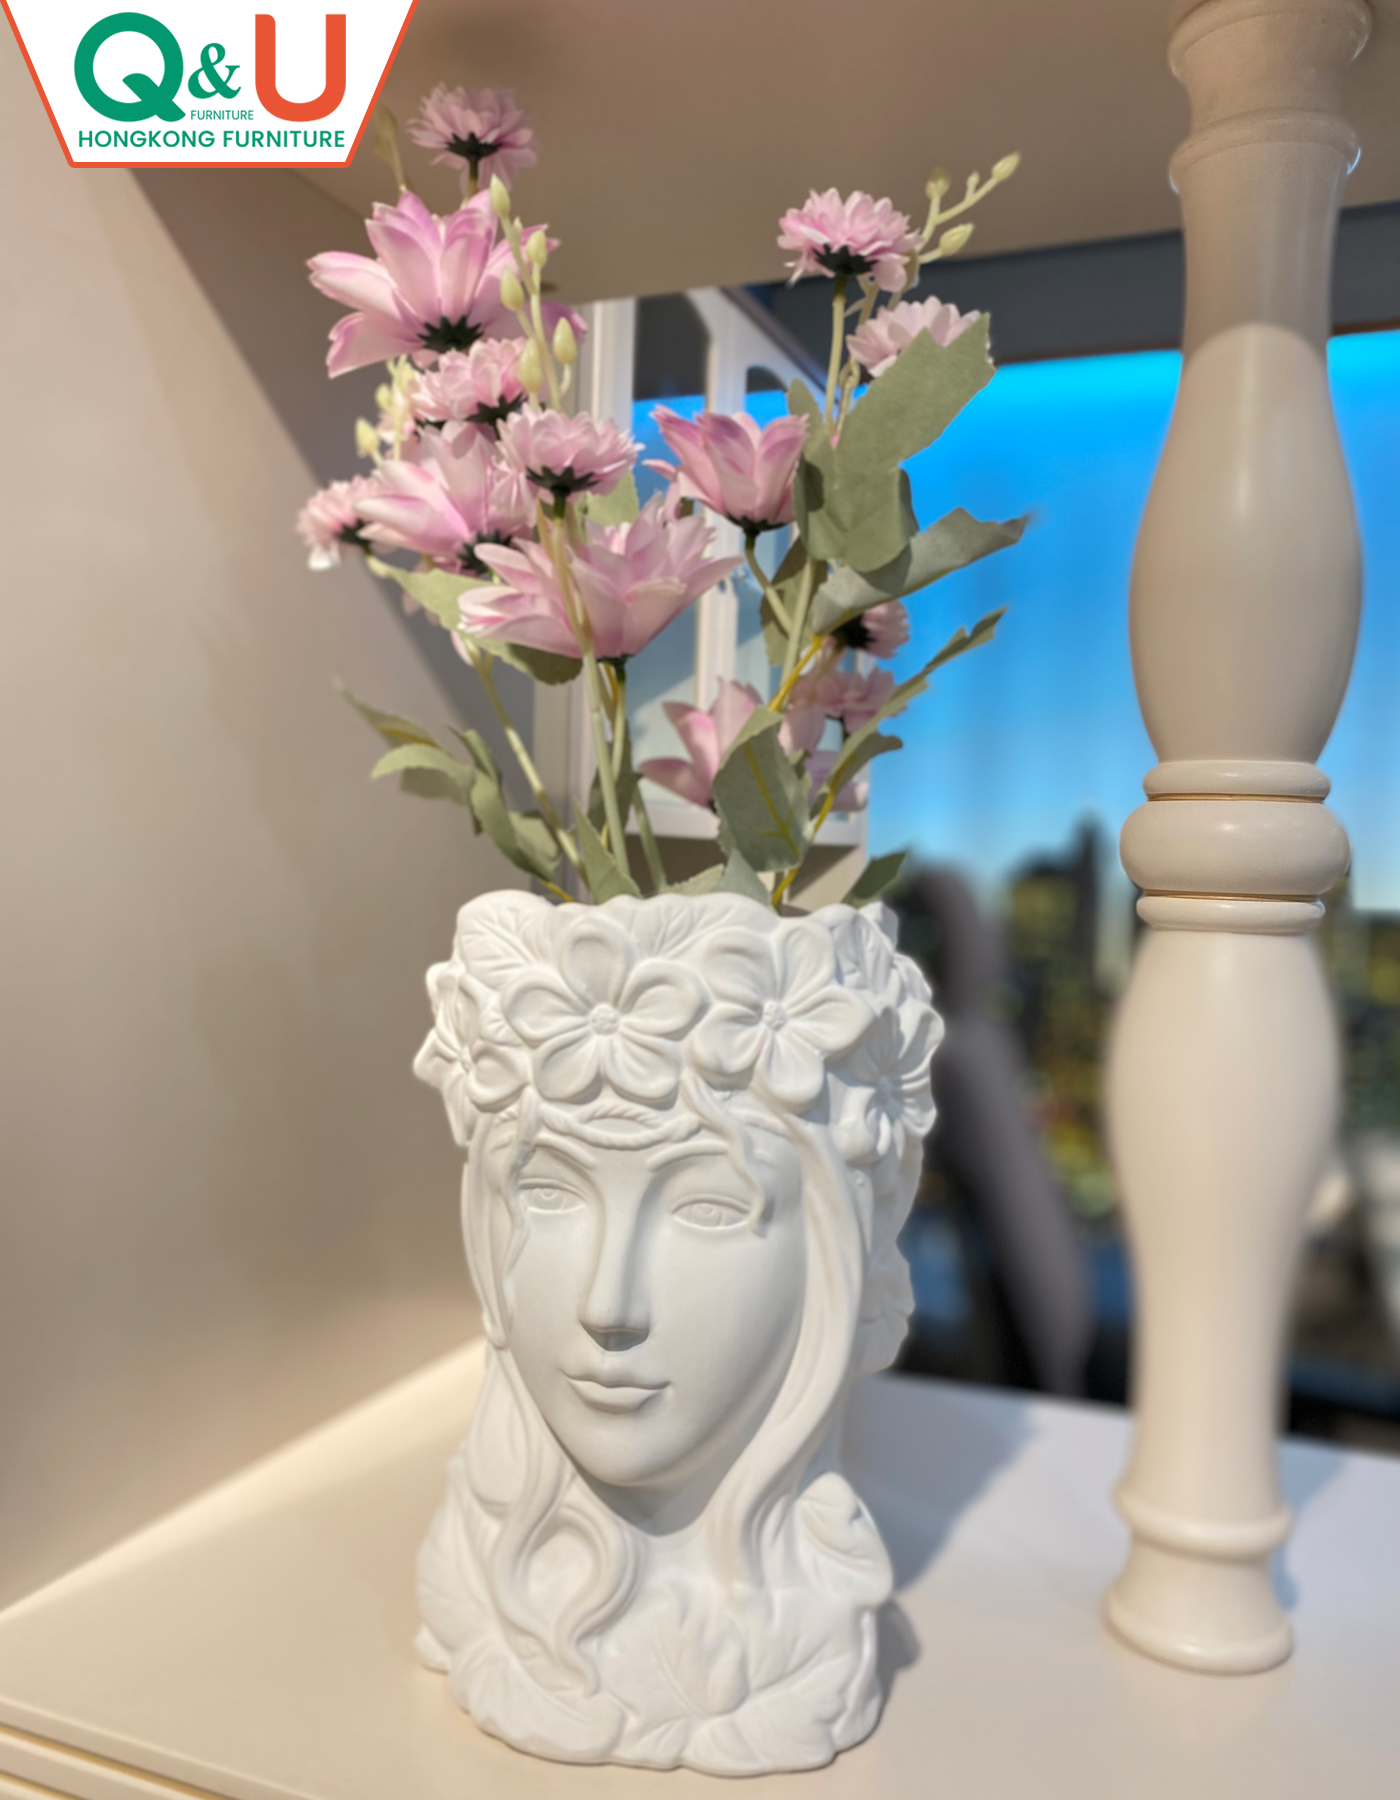 sculpture-decorative-white-color-flower-vase-db-0005w-2161